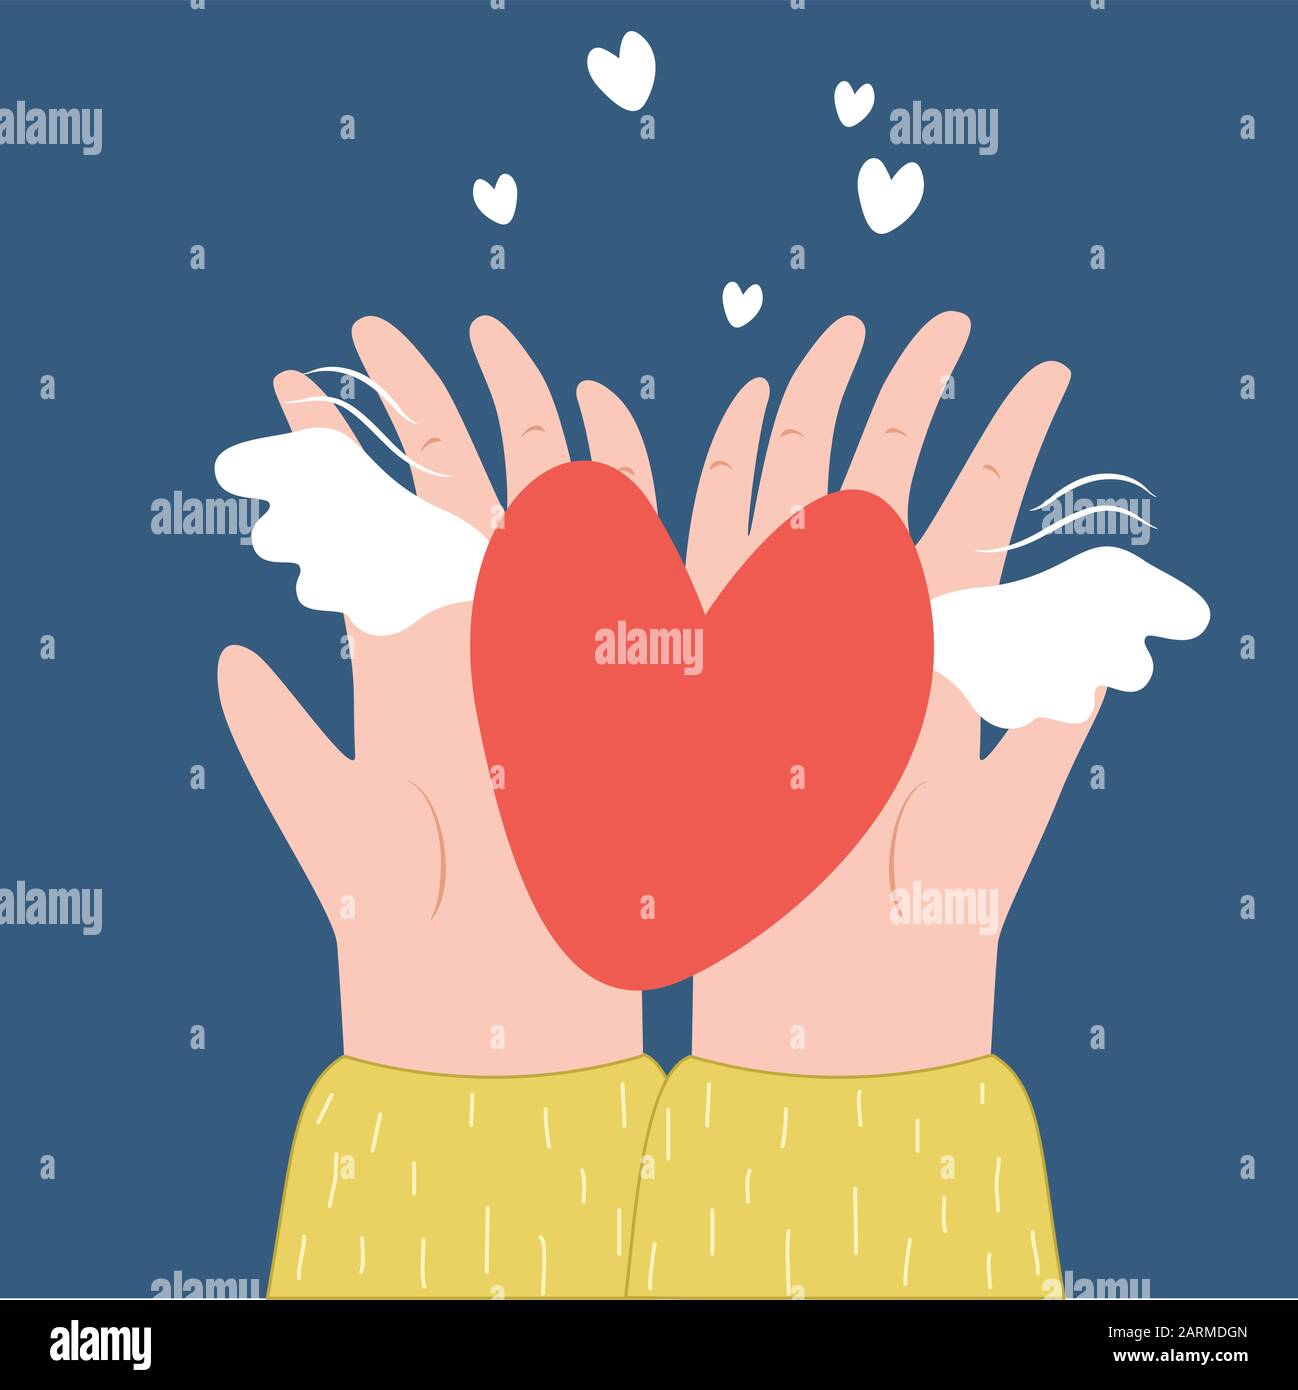 Zwei Hande Halten Ein Herz Mit Flugeln Vektor Cartoon Illustration Top View Valentinstag Liebe Beziehung Symbol Fur Wohltatigkeitsorganisation Stock Vektorgrafik Alamy